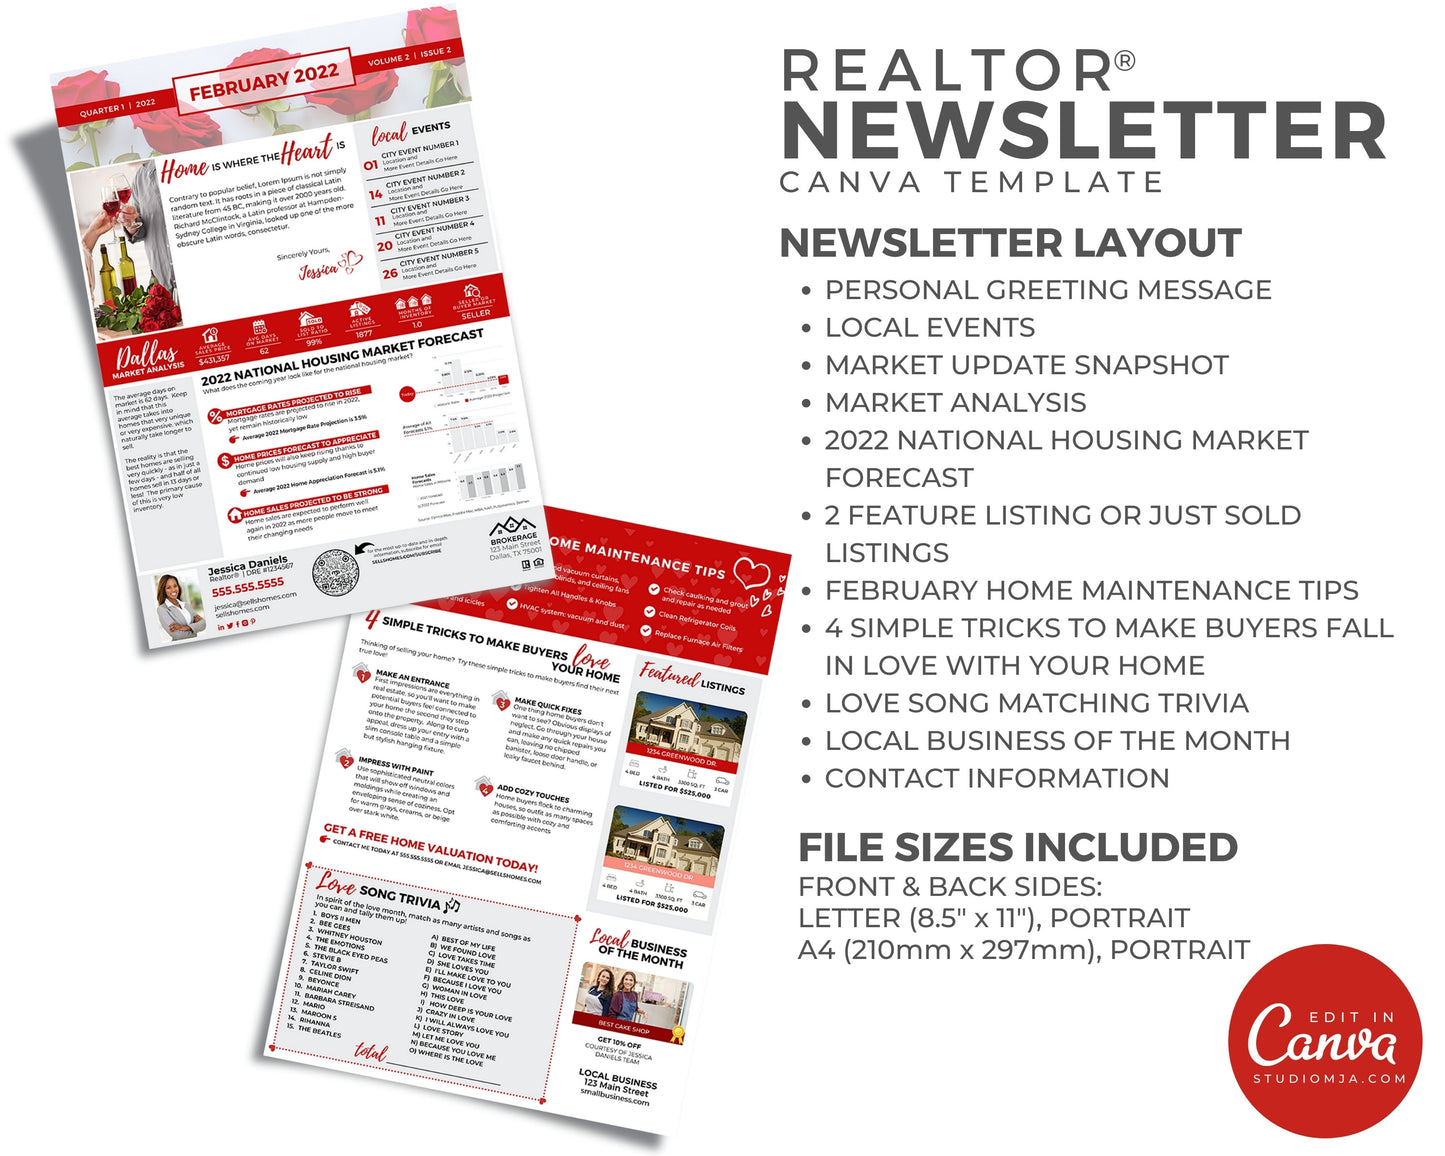 Realtor Newsletter Template | February 2022